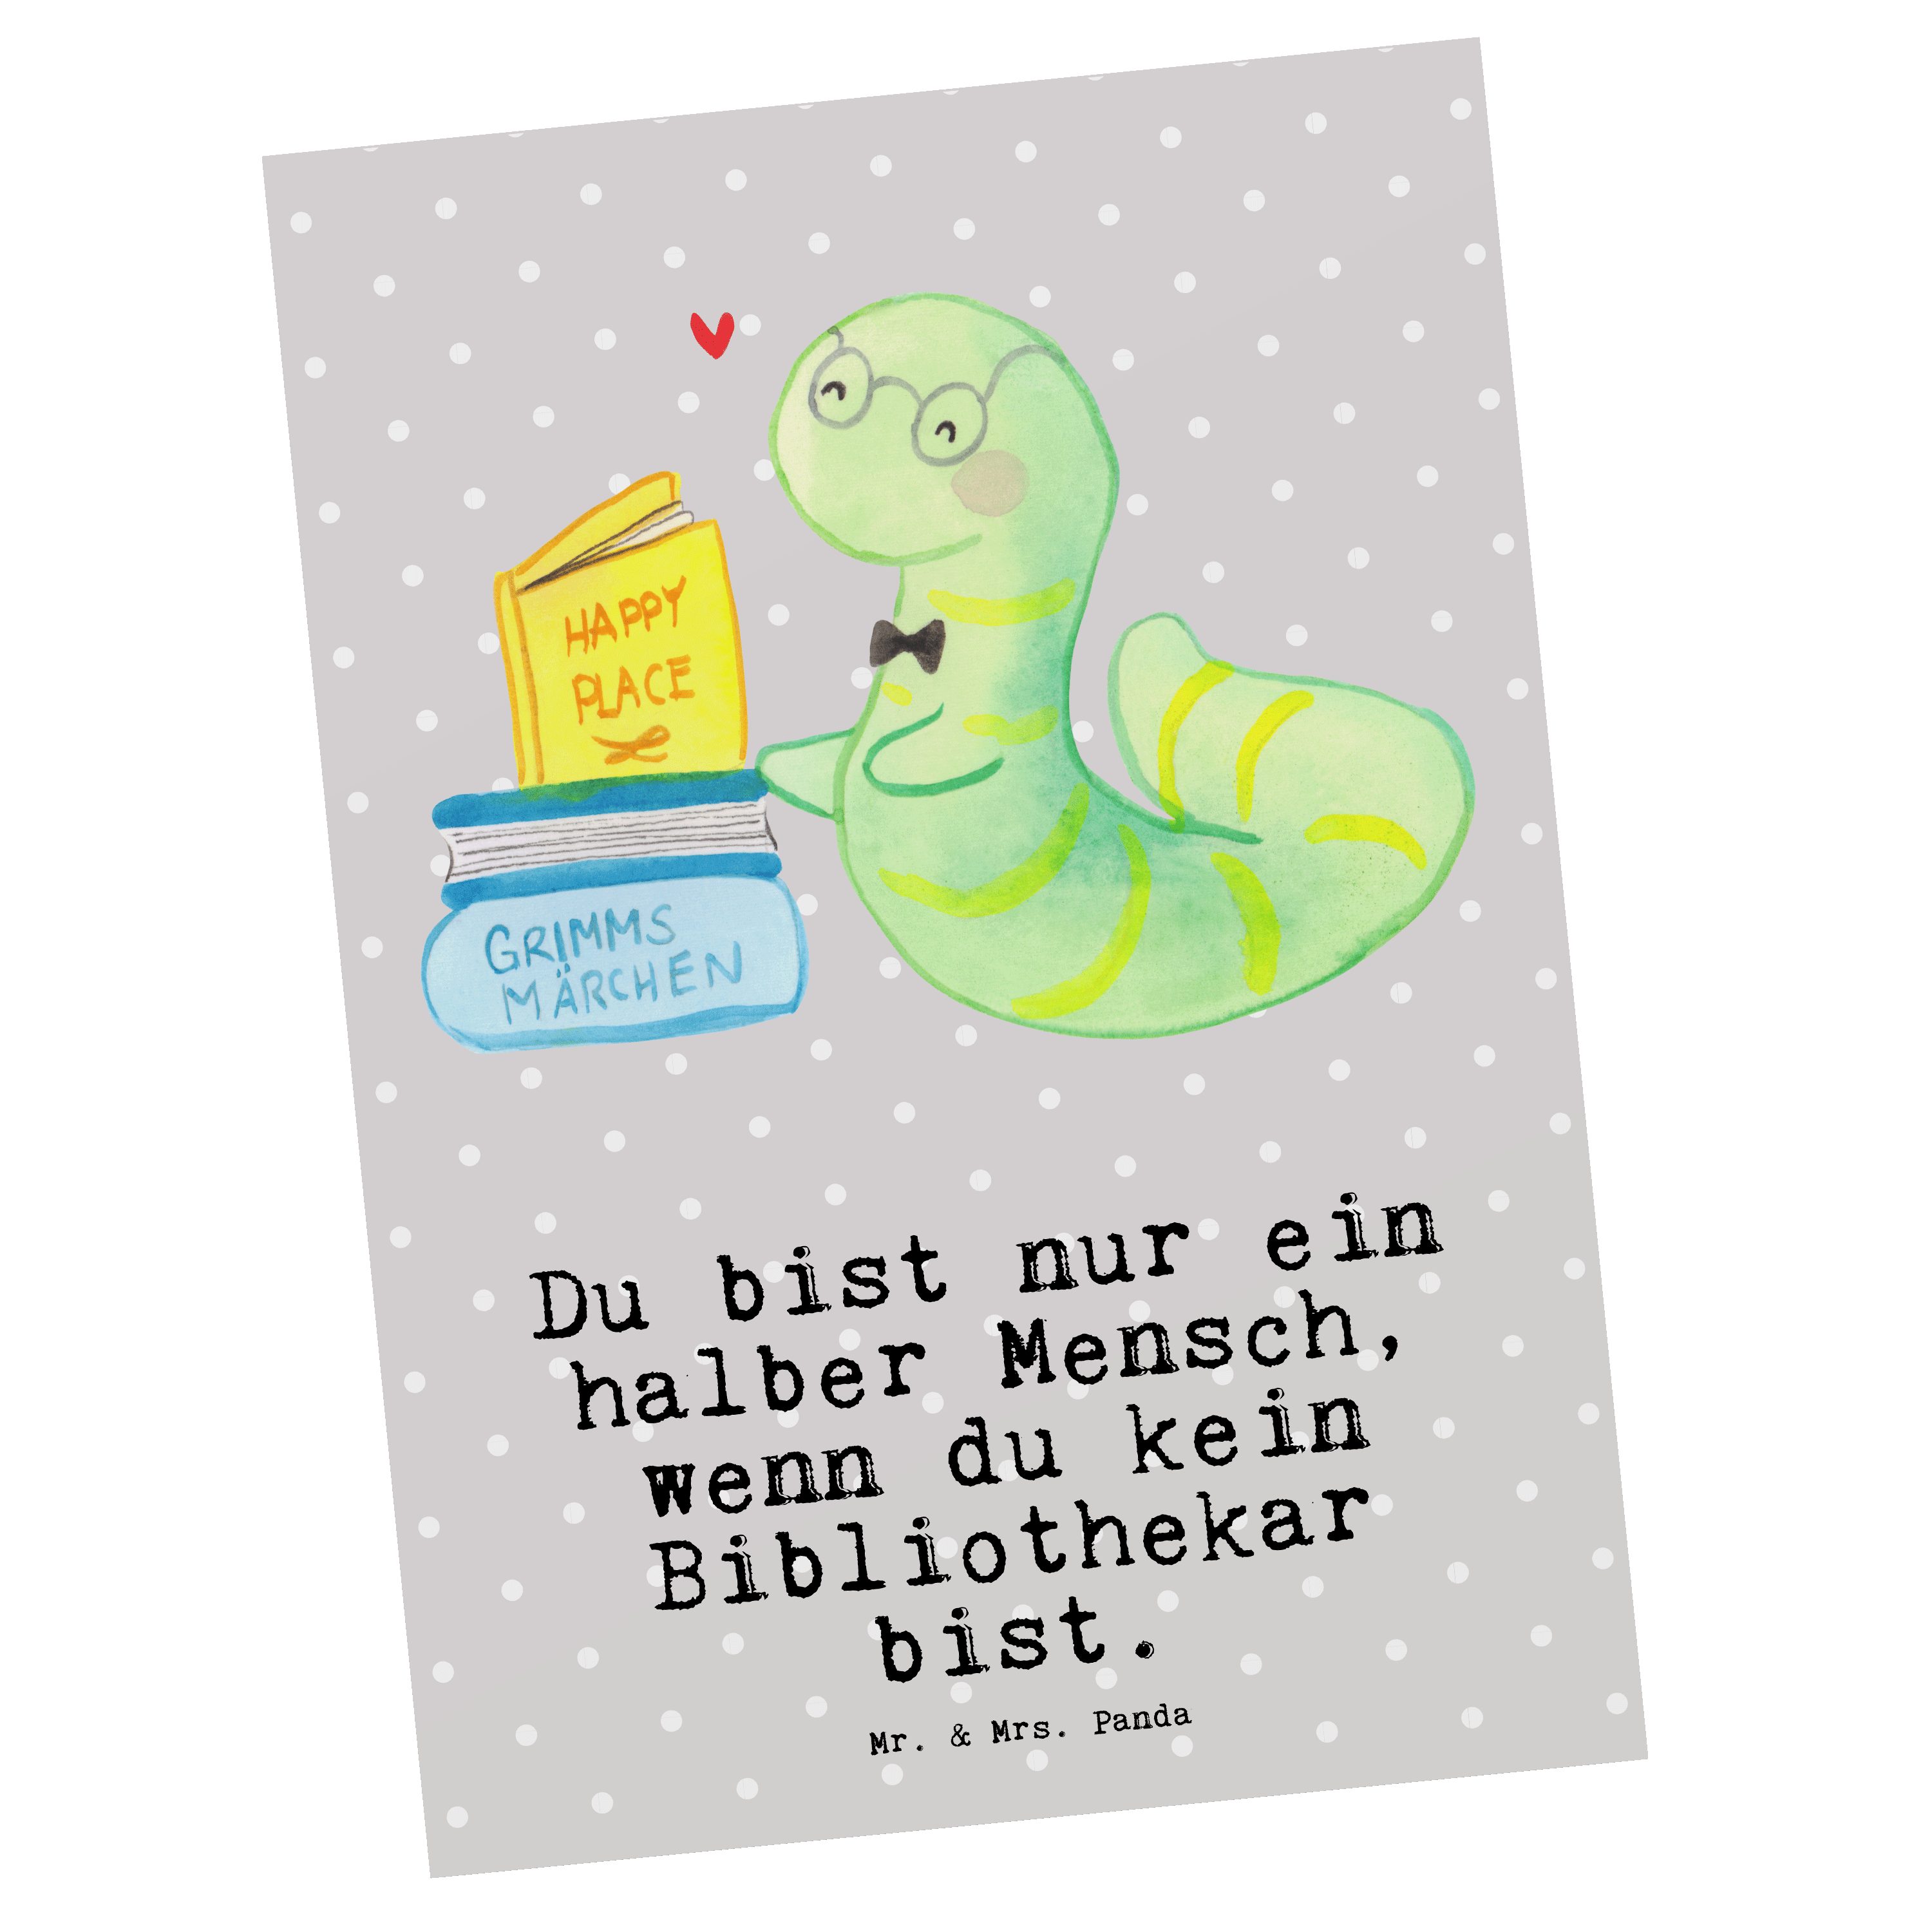 Mr. & Mrs. Panda - Pastell Geschenk - Bücherwurm, Grau Geschenk, Bibliothekar Postkarte Herz mit